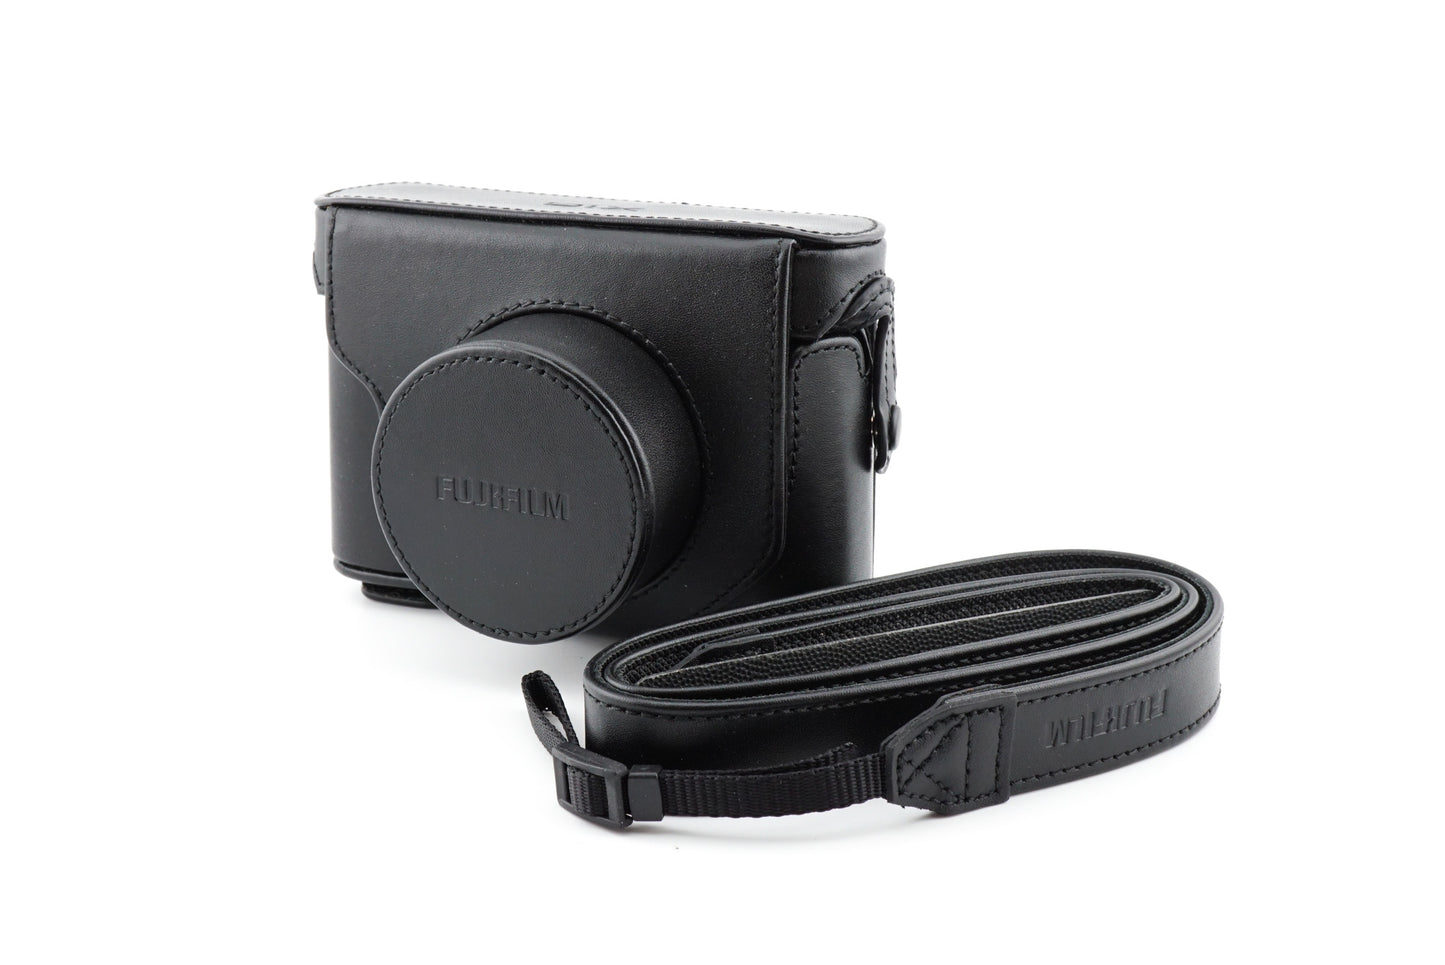 Fujifilm X10 Leather Case - Accessory